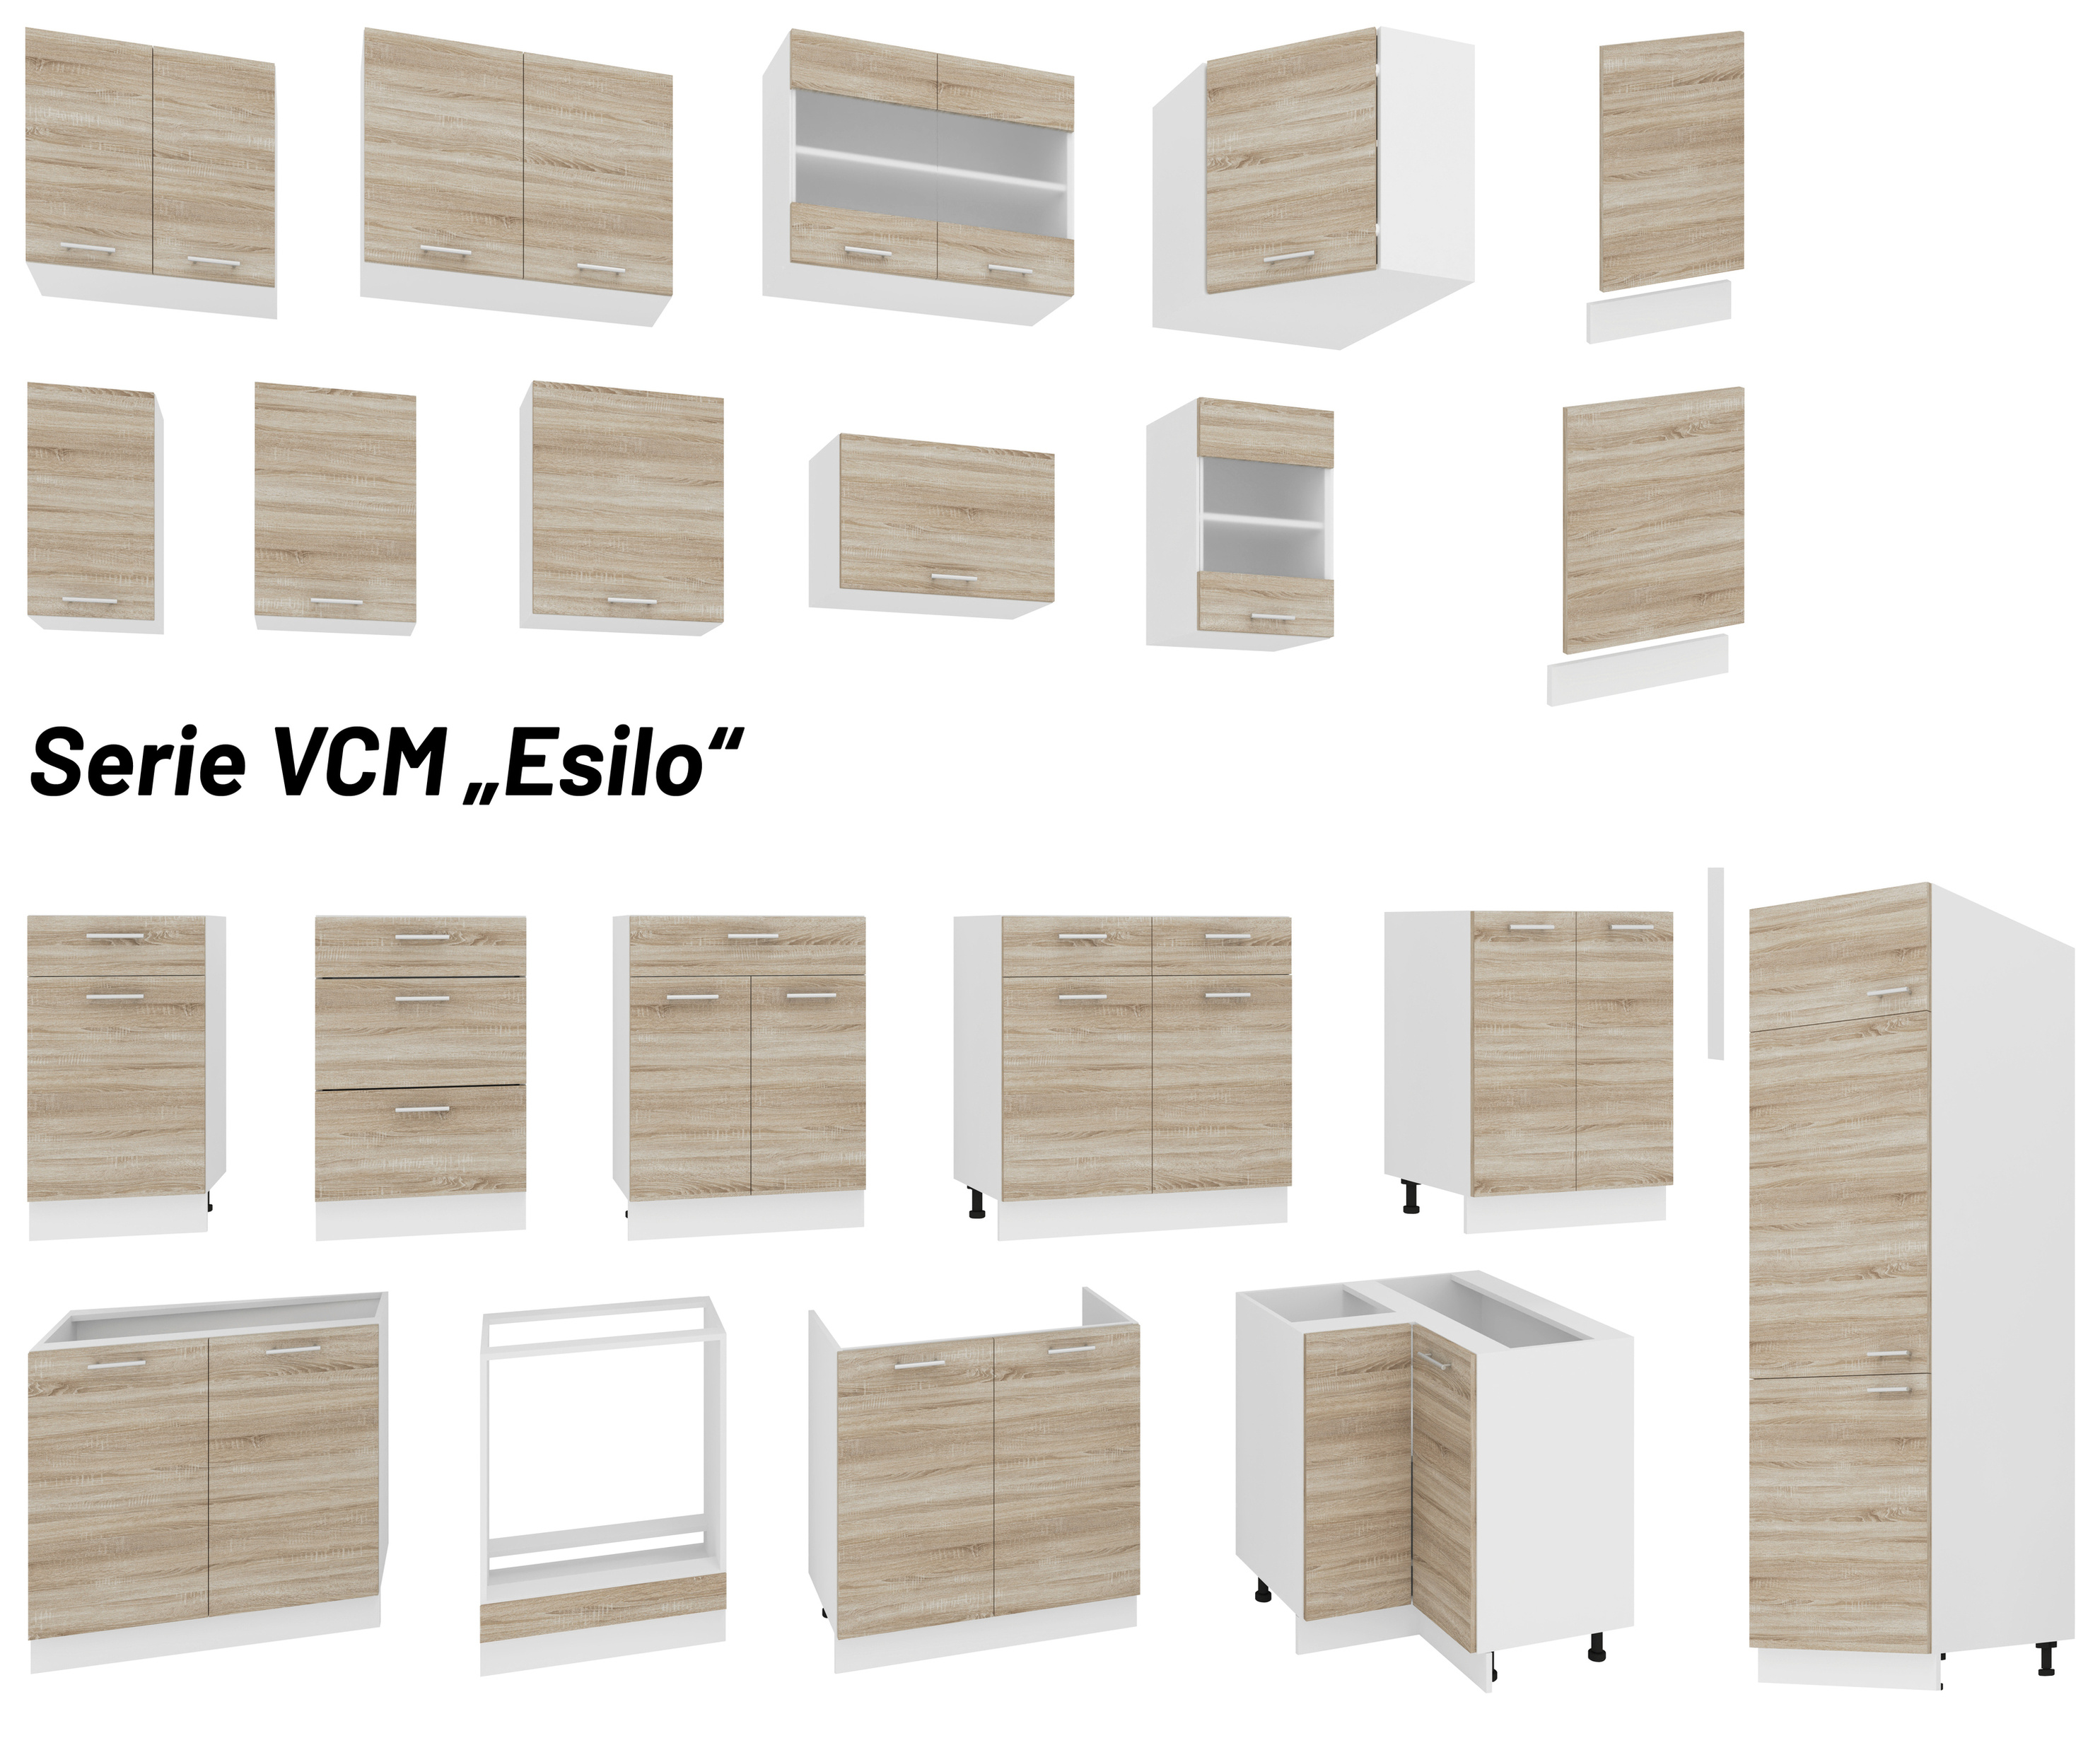 VCM Spülunterschrank Breite 80 cm Spülenschrank Unterschrank Spüle Küche  Esilo Farbe: Weiß Sonoma-Eiche